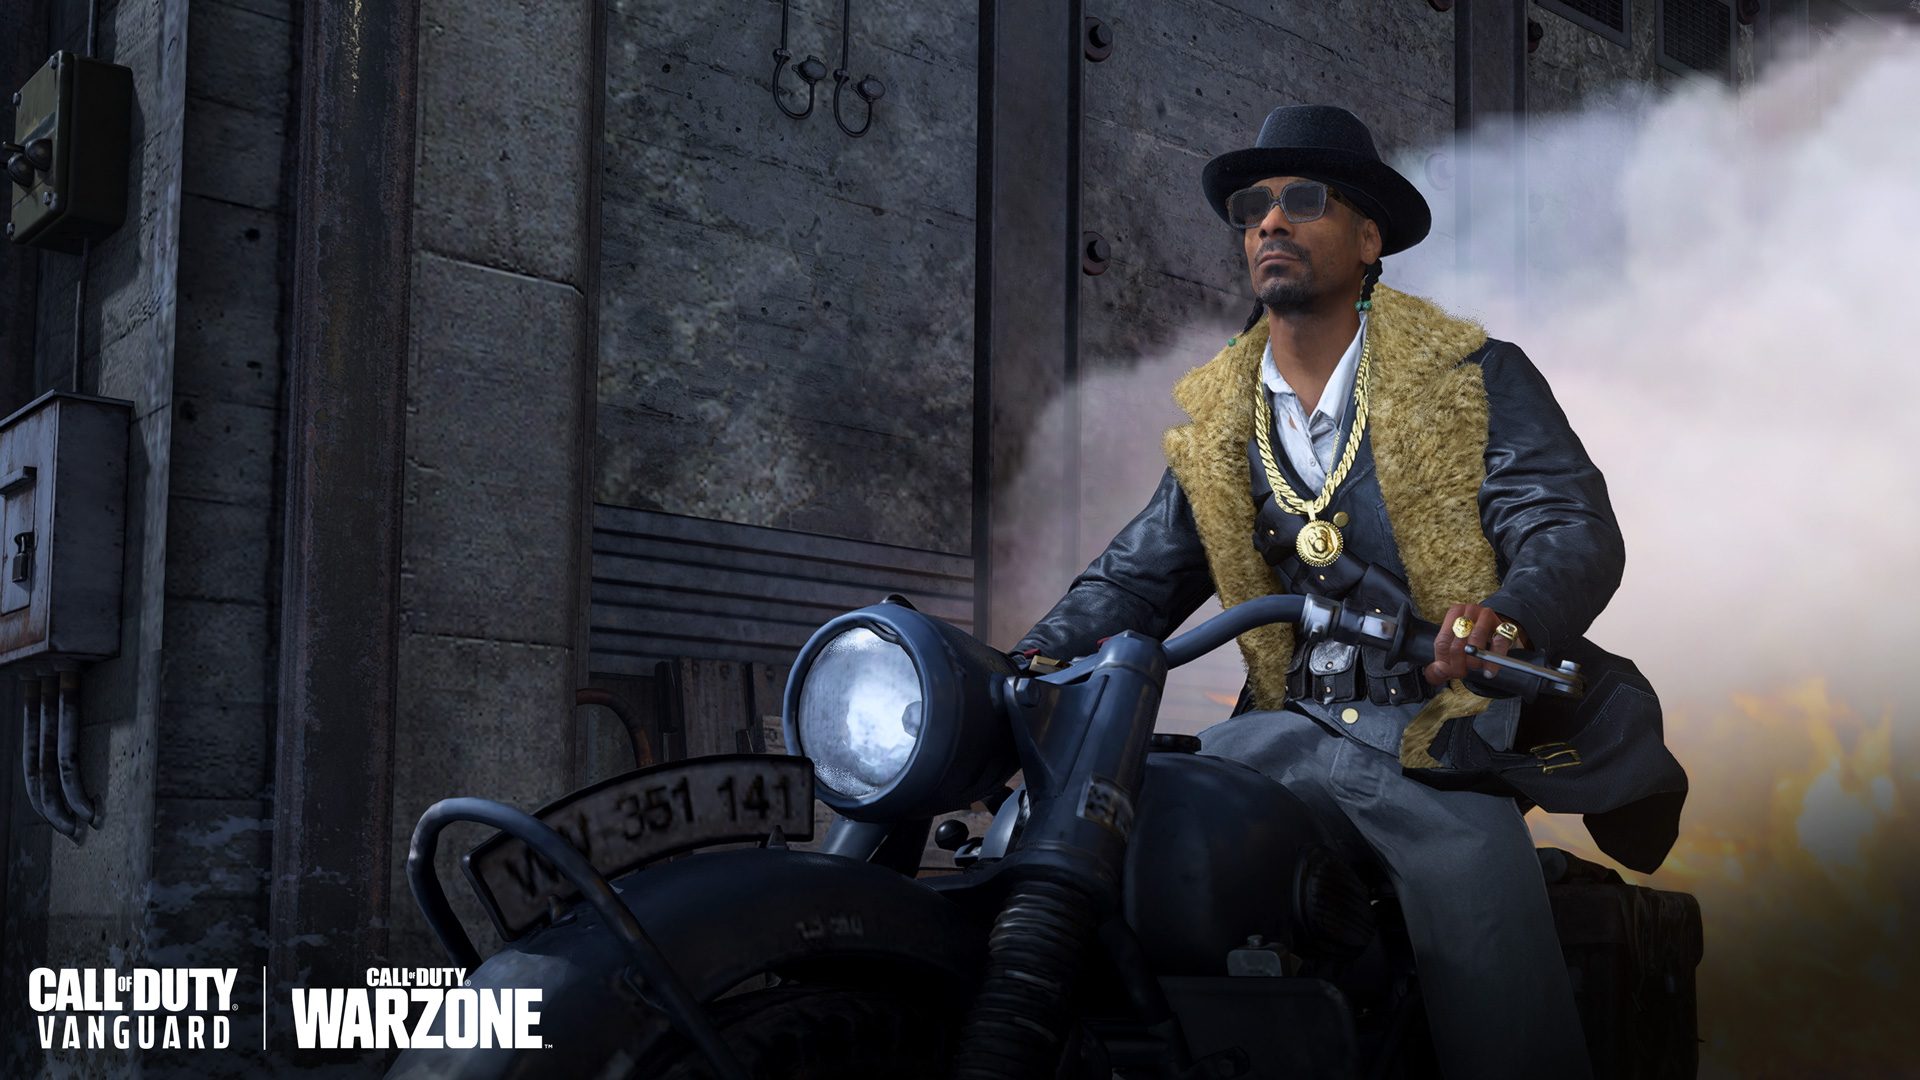 Capture d'écran d'une des apparences de Snoop Dogg dans Call of Duty Vanguard et Warzone. Il porte une fourrure et un fedora, et est sur une grosse moto.